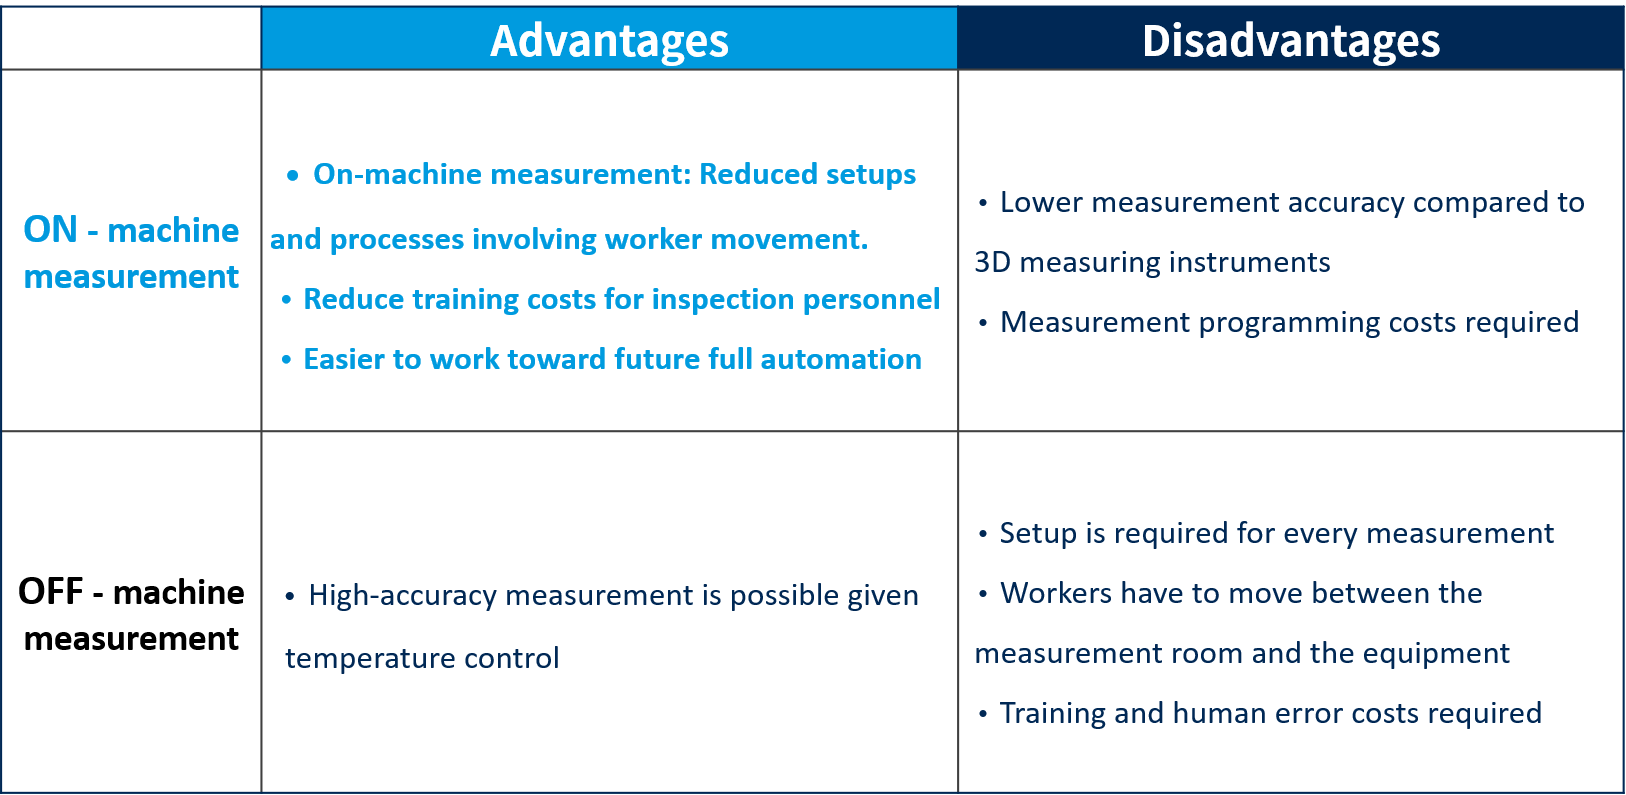 Advantages of On-machine measurement